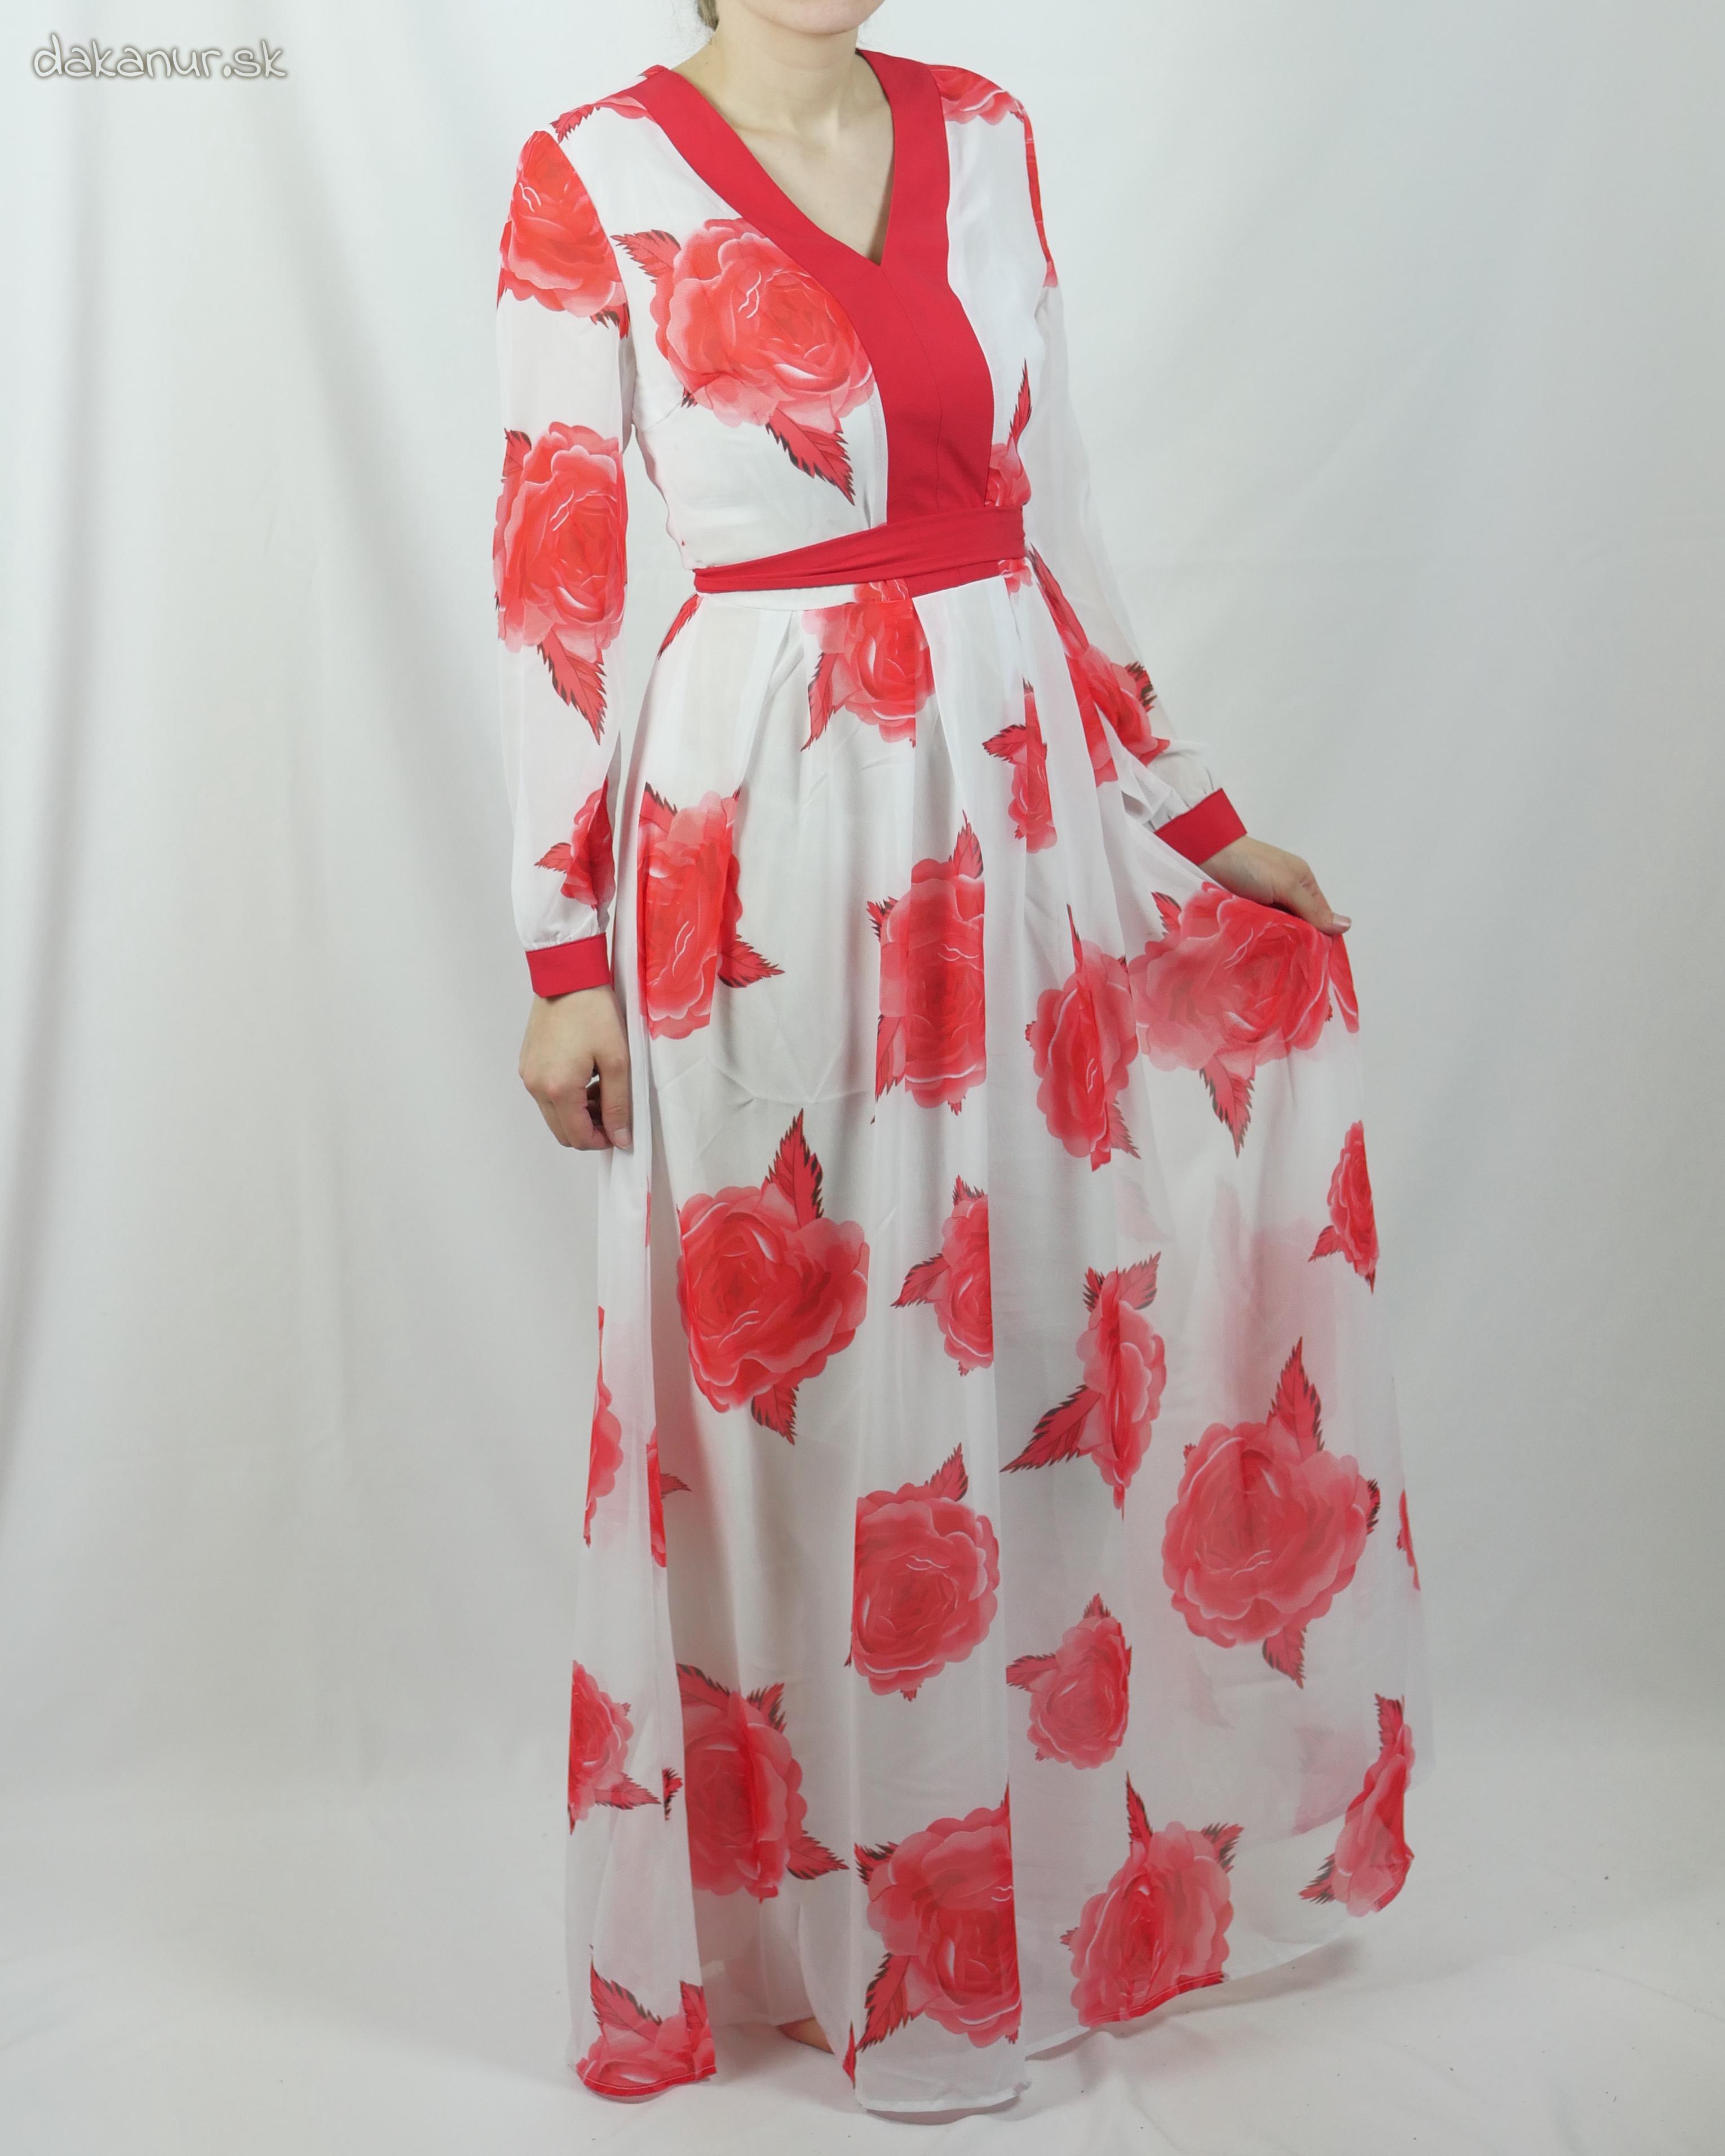 Bieločervené šaty s kvetmi